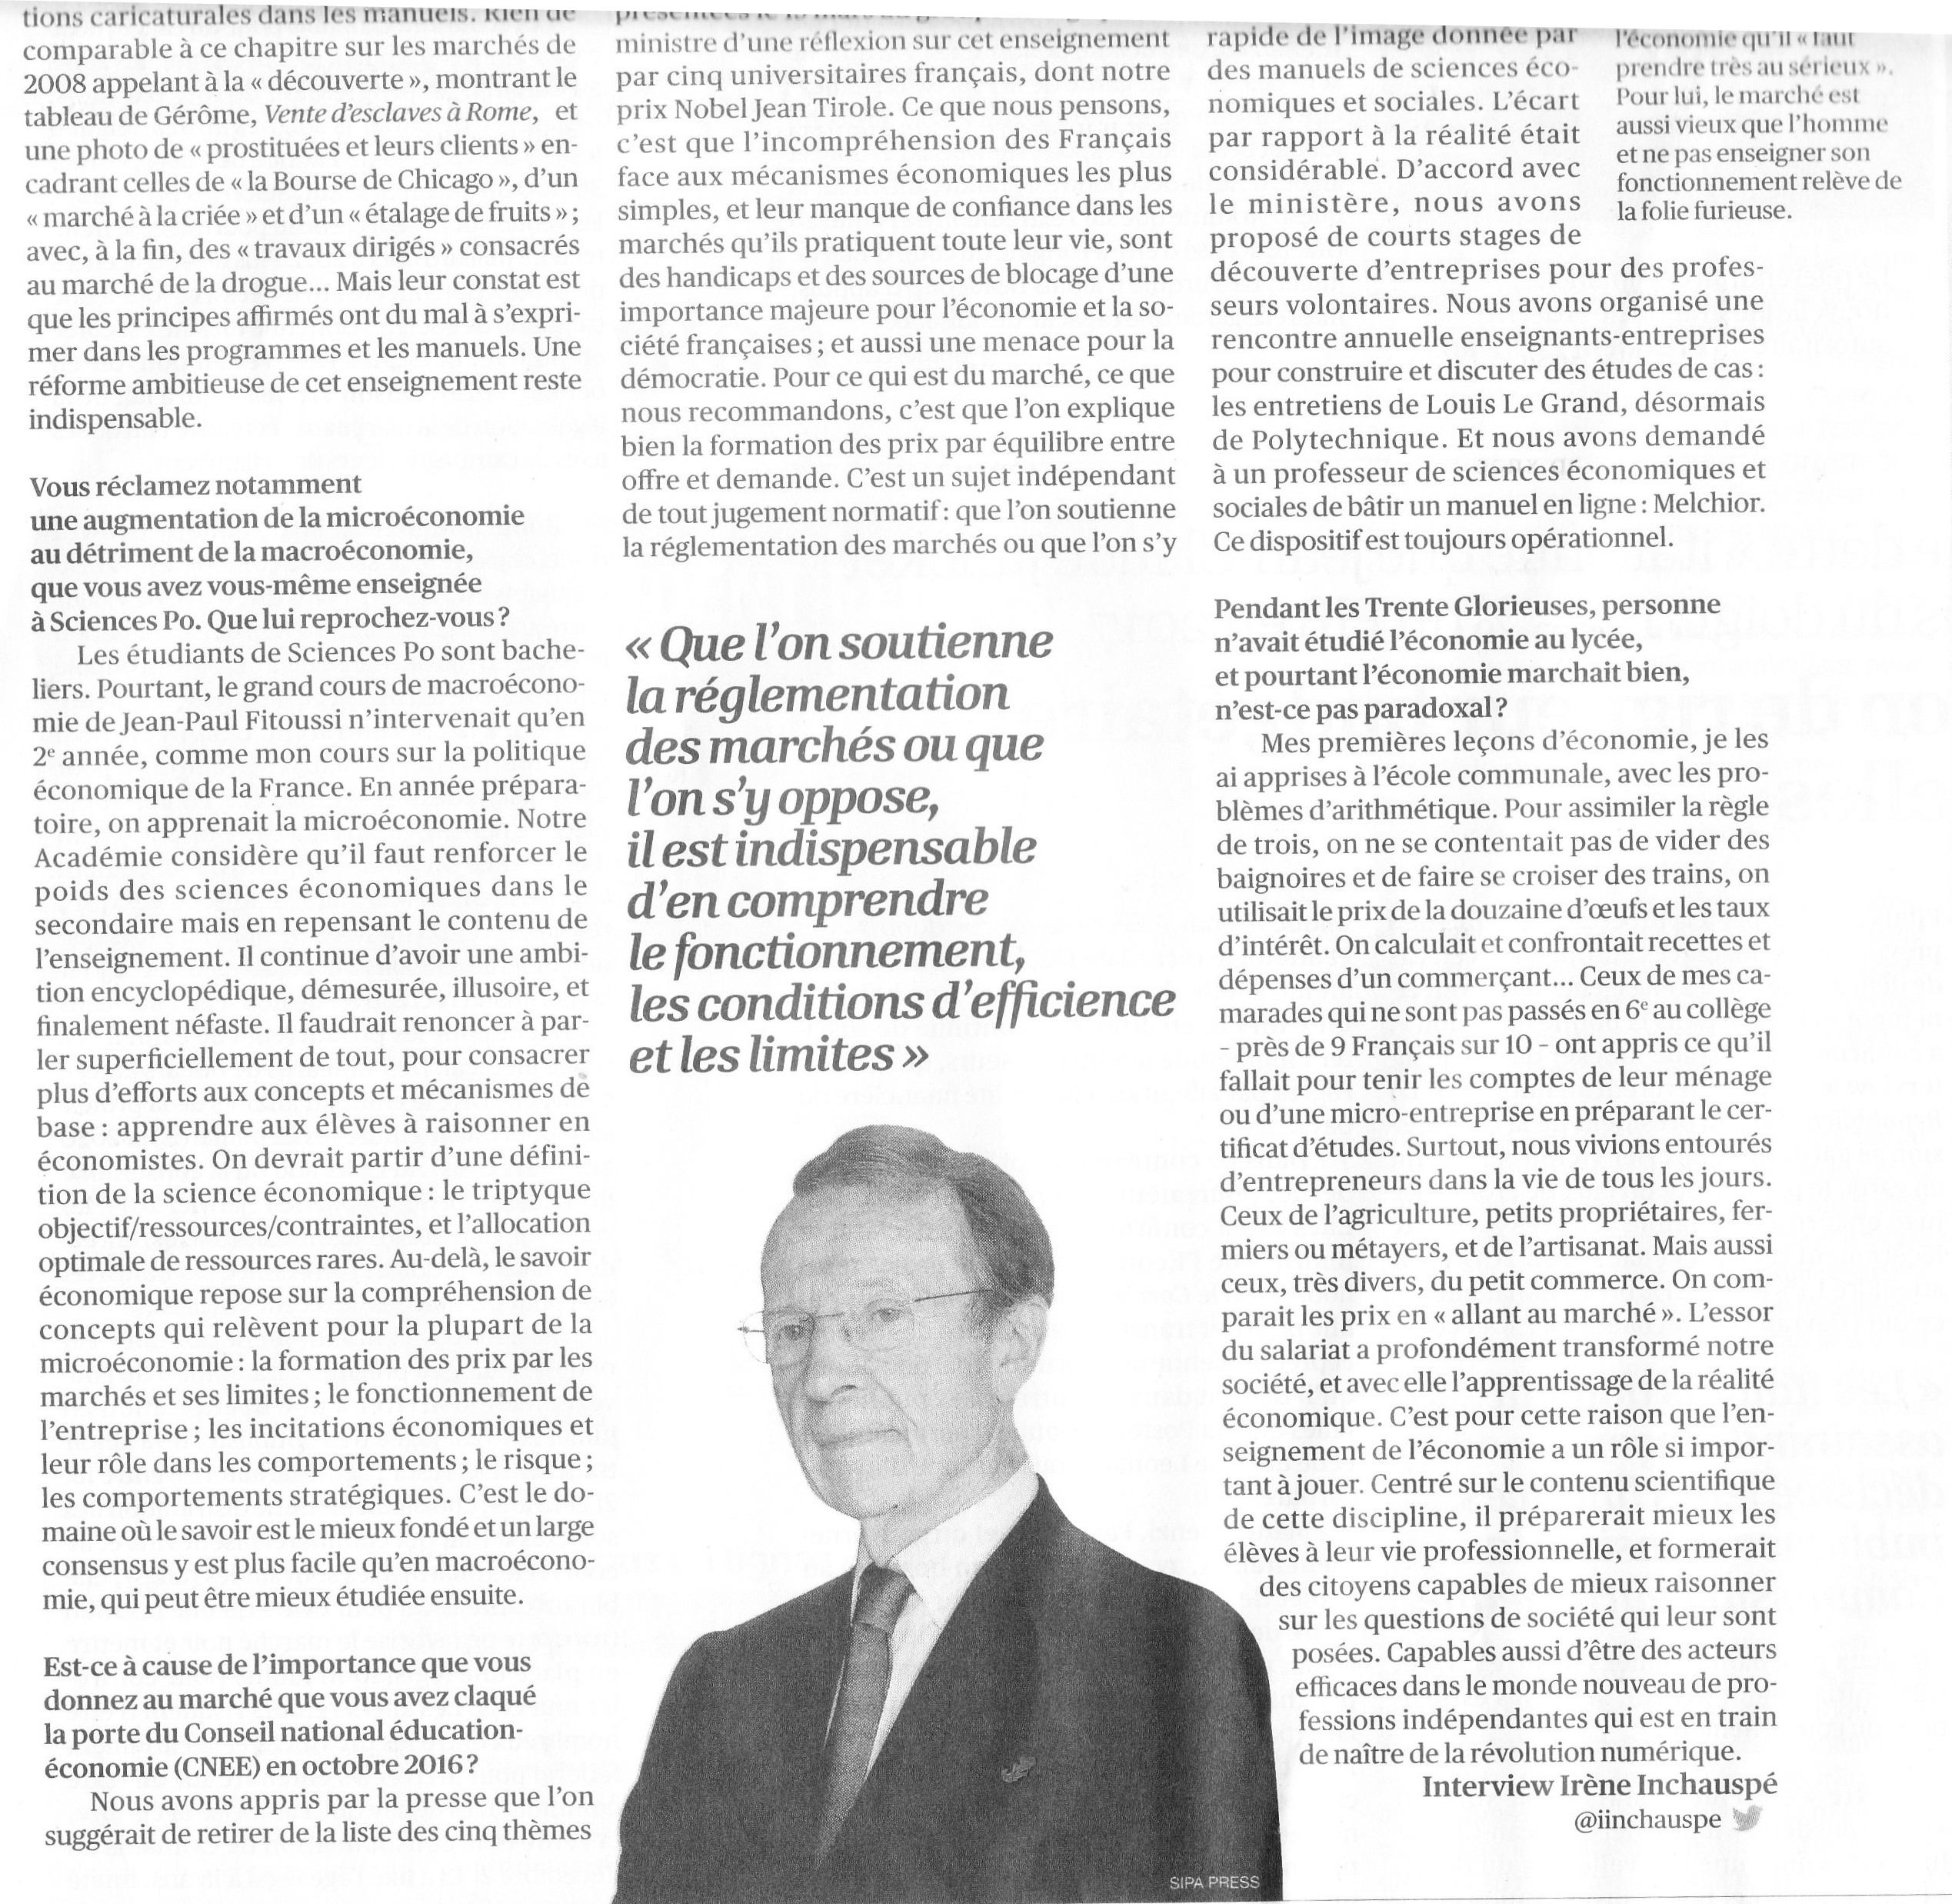 Pébereau l'opinion 2017 (2)